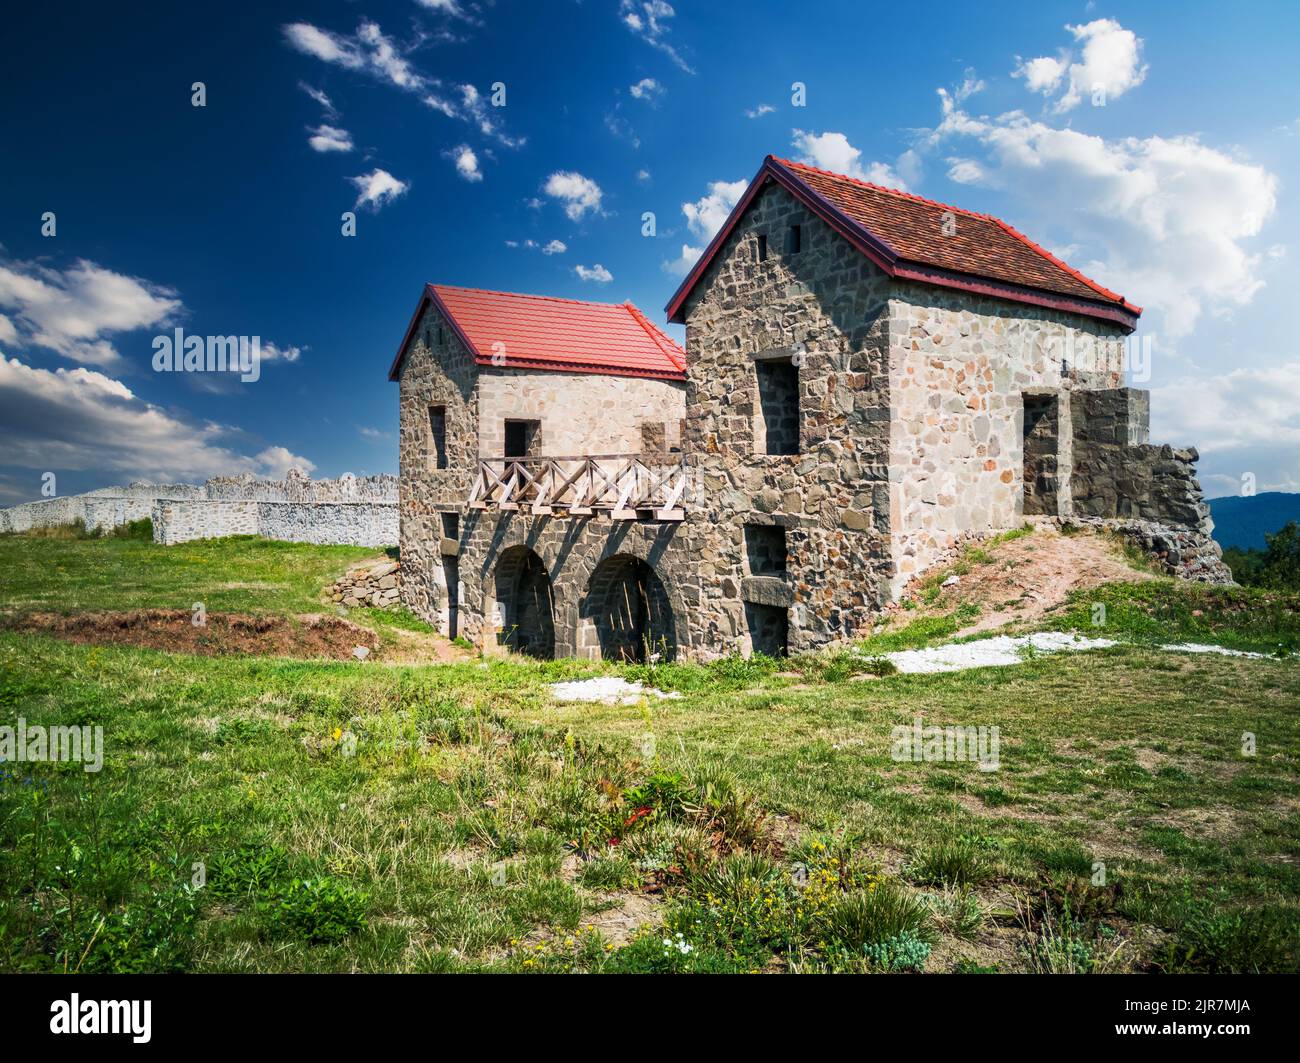 Porolissum, Rumania - Ruinas del castrum romano antiguo y de la ciudad en la provincia de Dacia Porolissensis. Entrada de Porta Pretoria. Foto de stock